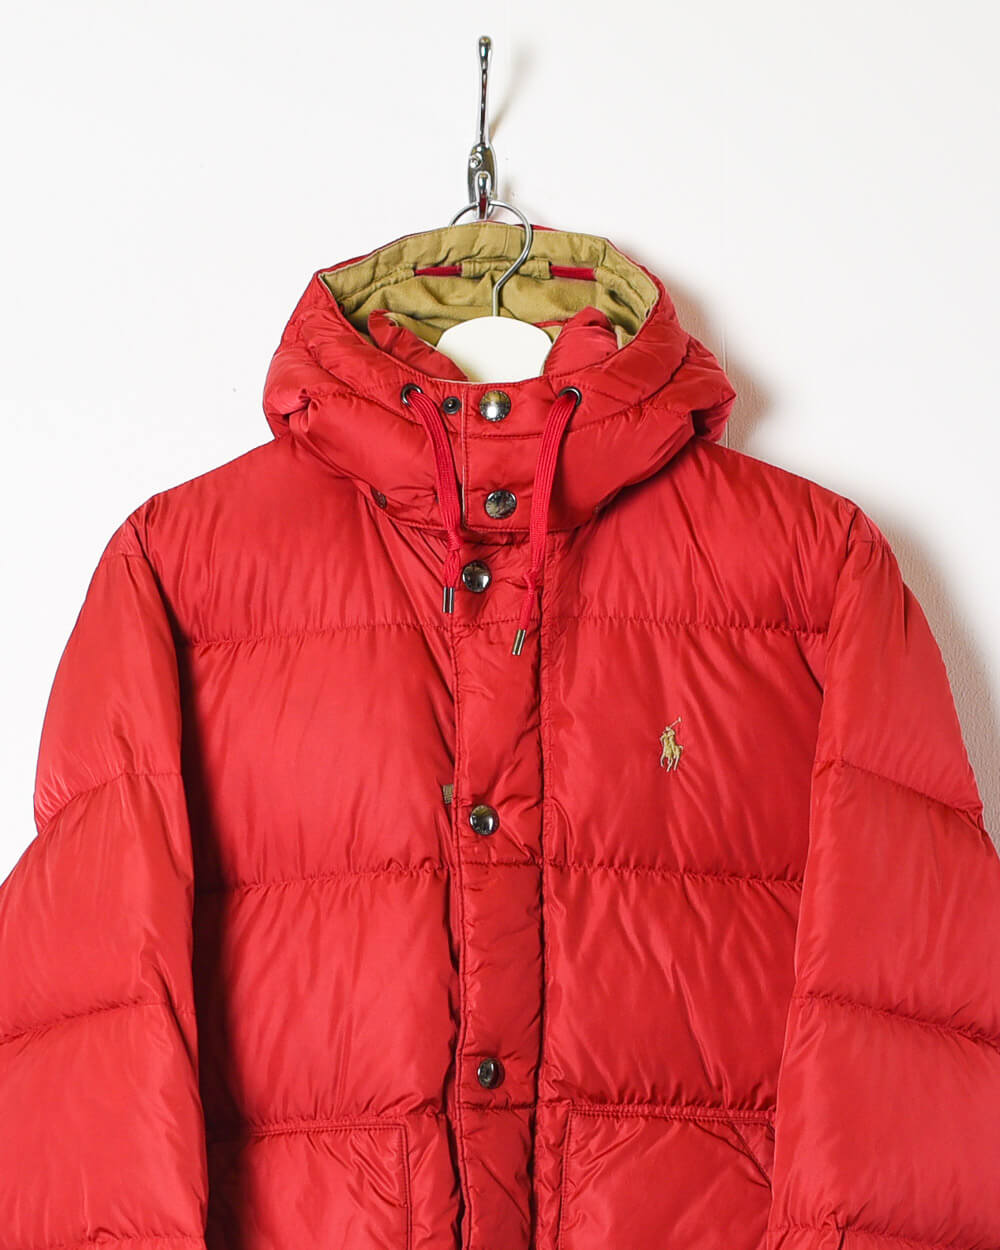 Red Ralph Lauren Puffer Jacket - Small